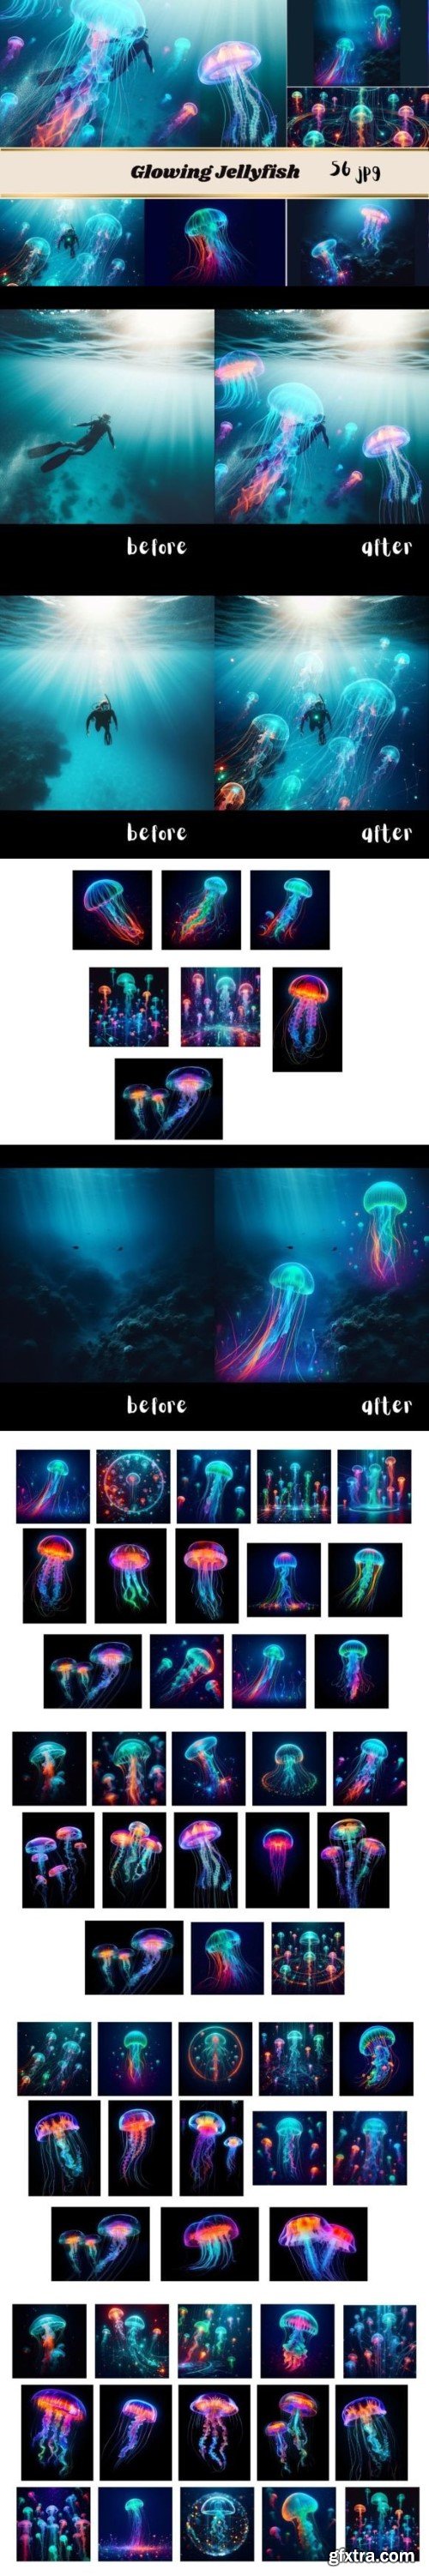 Cyberpunk Glowing Jellyfish